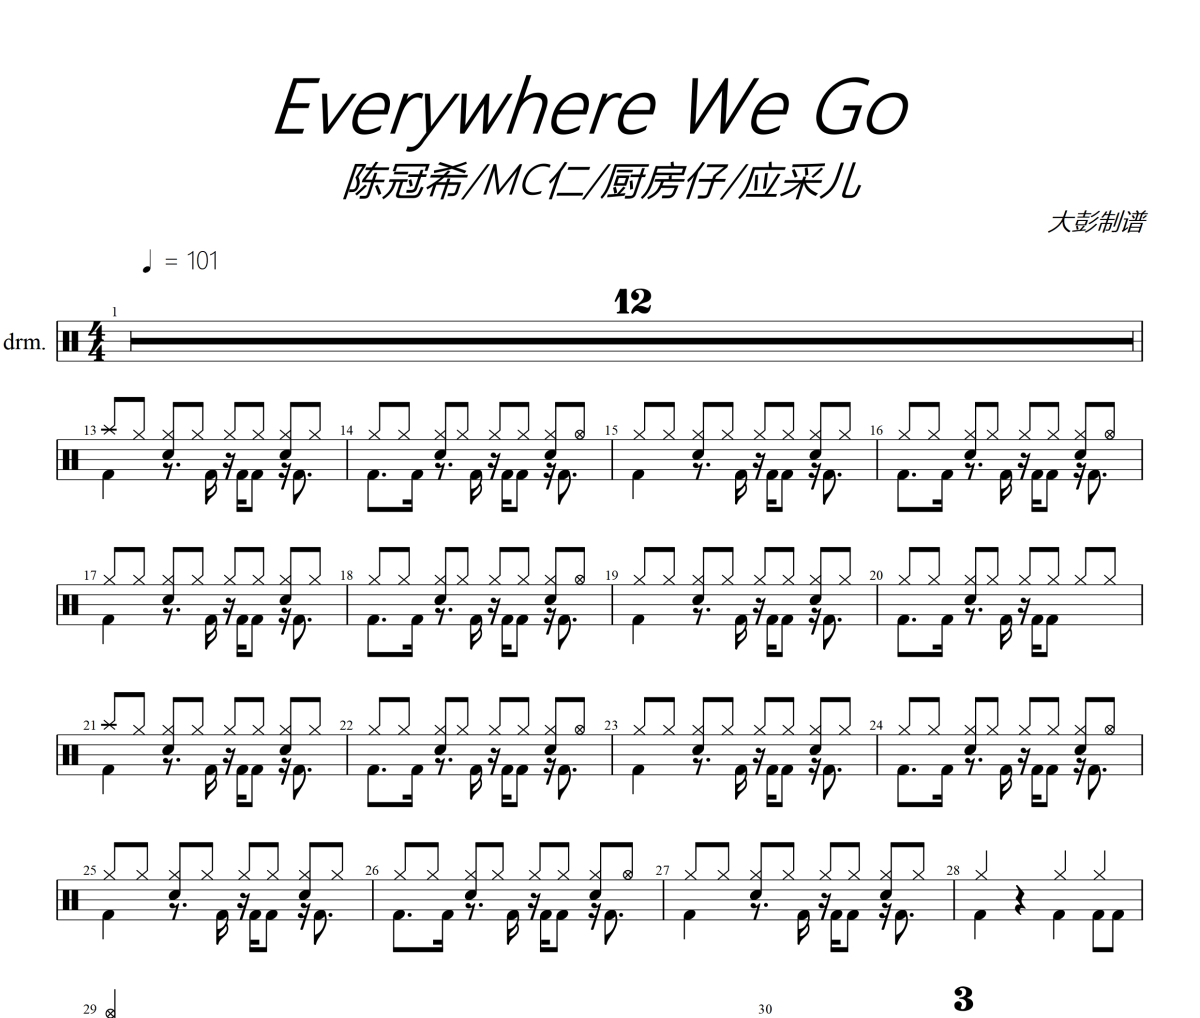 陈冠希 / MC仁 / 厨房仔 / 应采儿-Everywhere We Go架子鼓谱爵士鼓曲谱